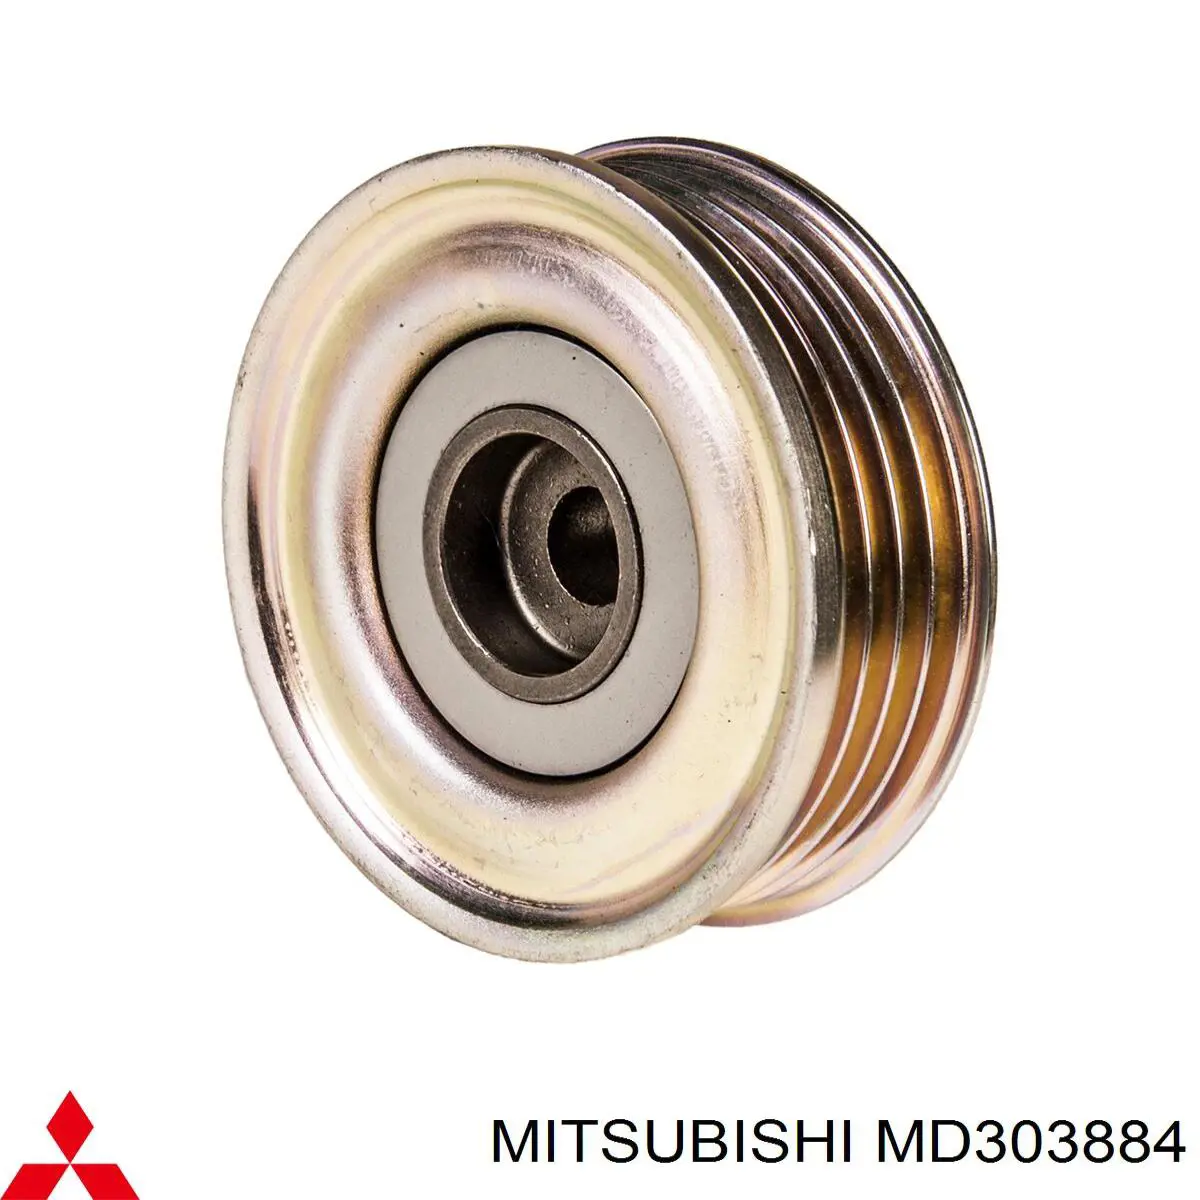 MD303884 Mitsubishi rolo de reguladora de tensão da correia de transmissão